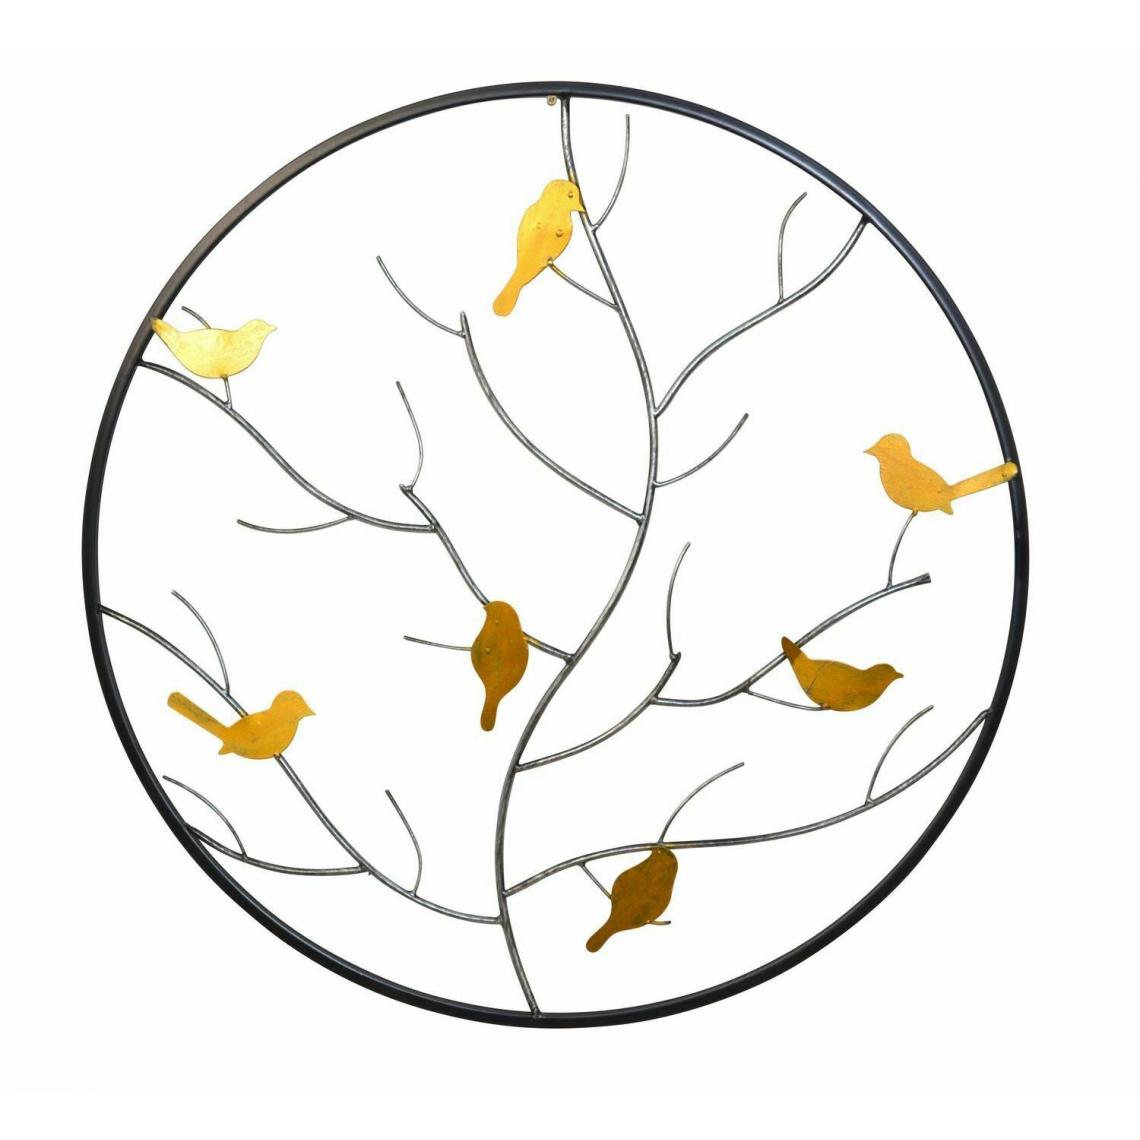 Decoshop26 - Décoration murale ronde en métal avec un cadre laqué noir design oiseaux dorés sur branches DEC05107 - Objets déco